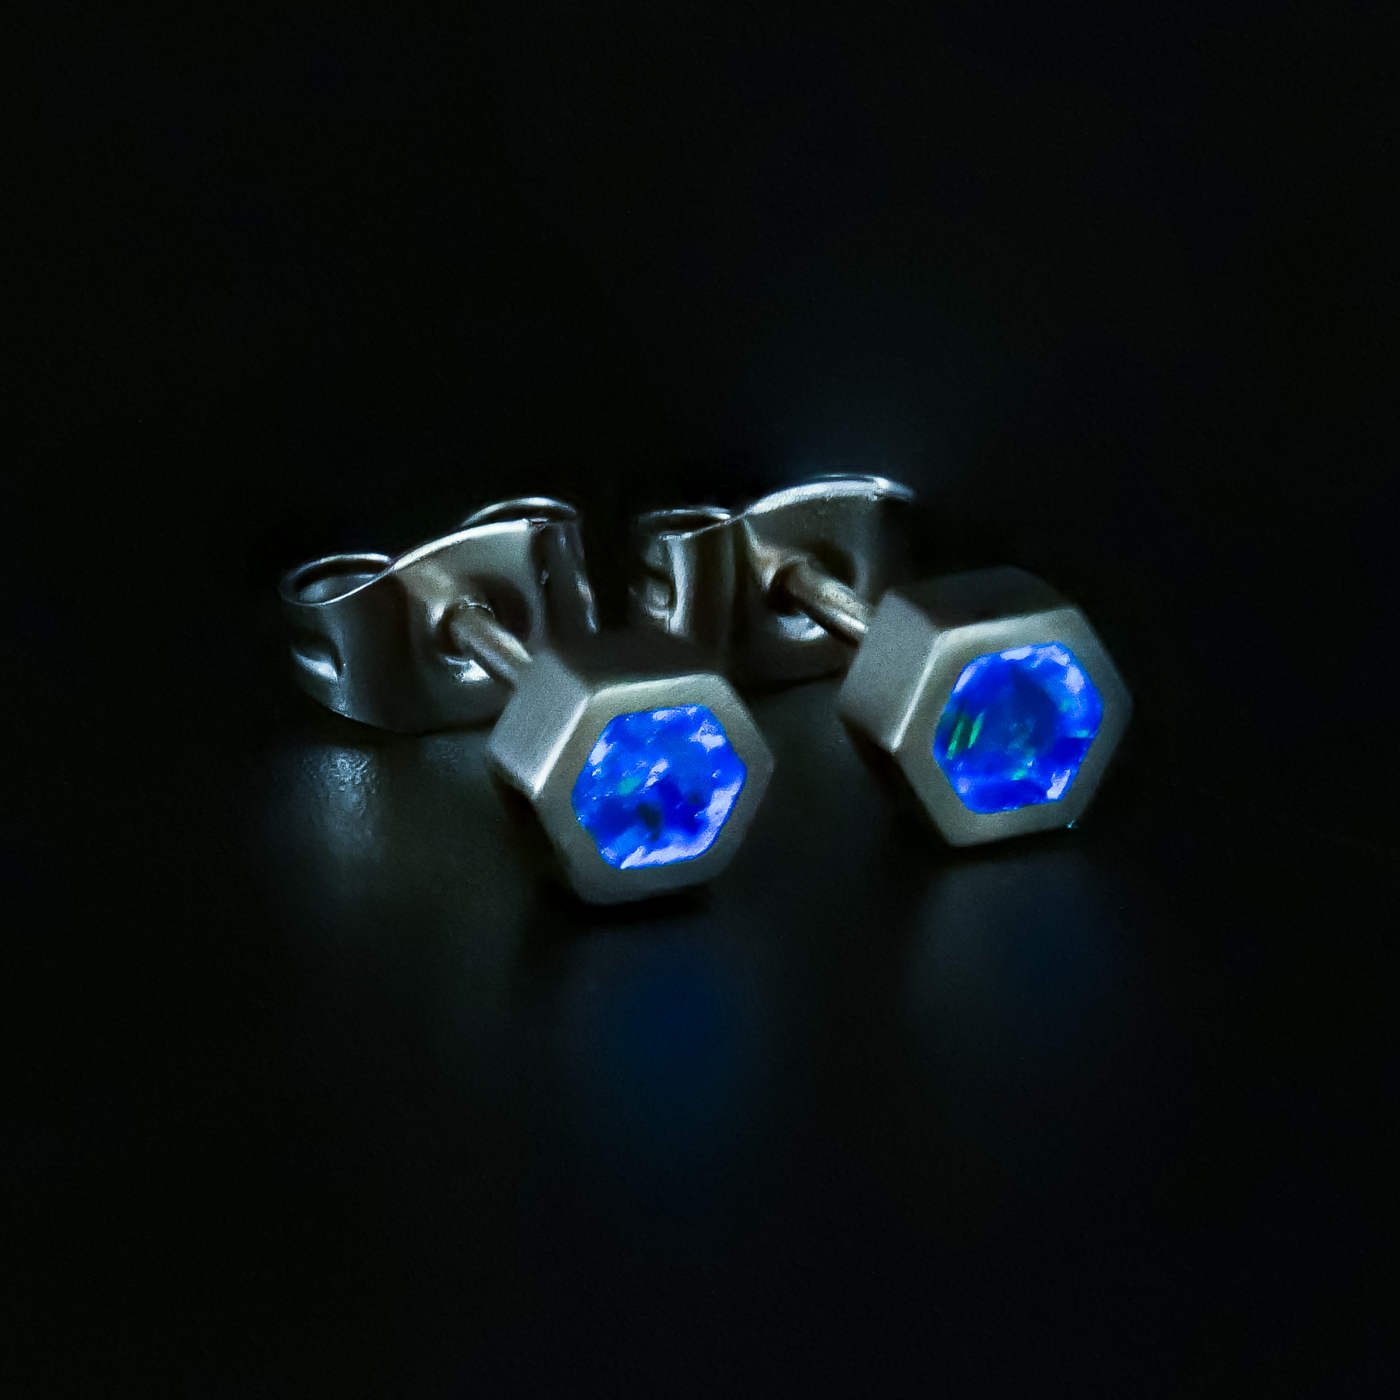 Winter's Howl Glowstone Earrings - Patrick Adair Designs